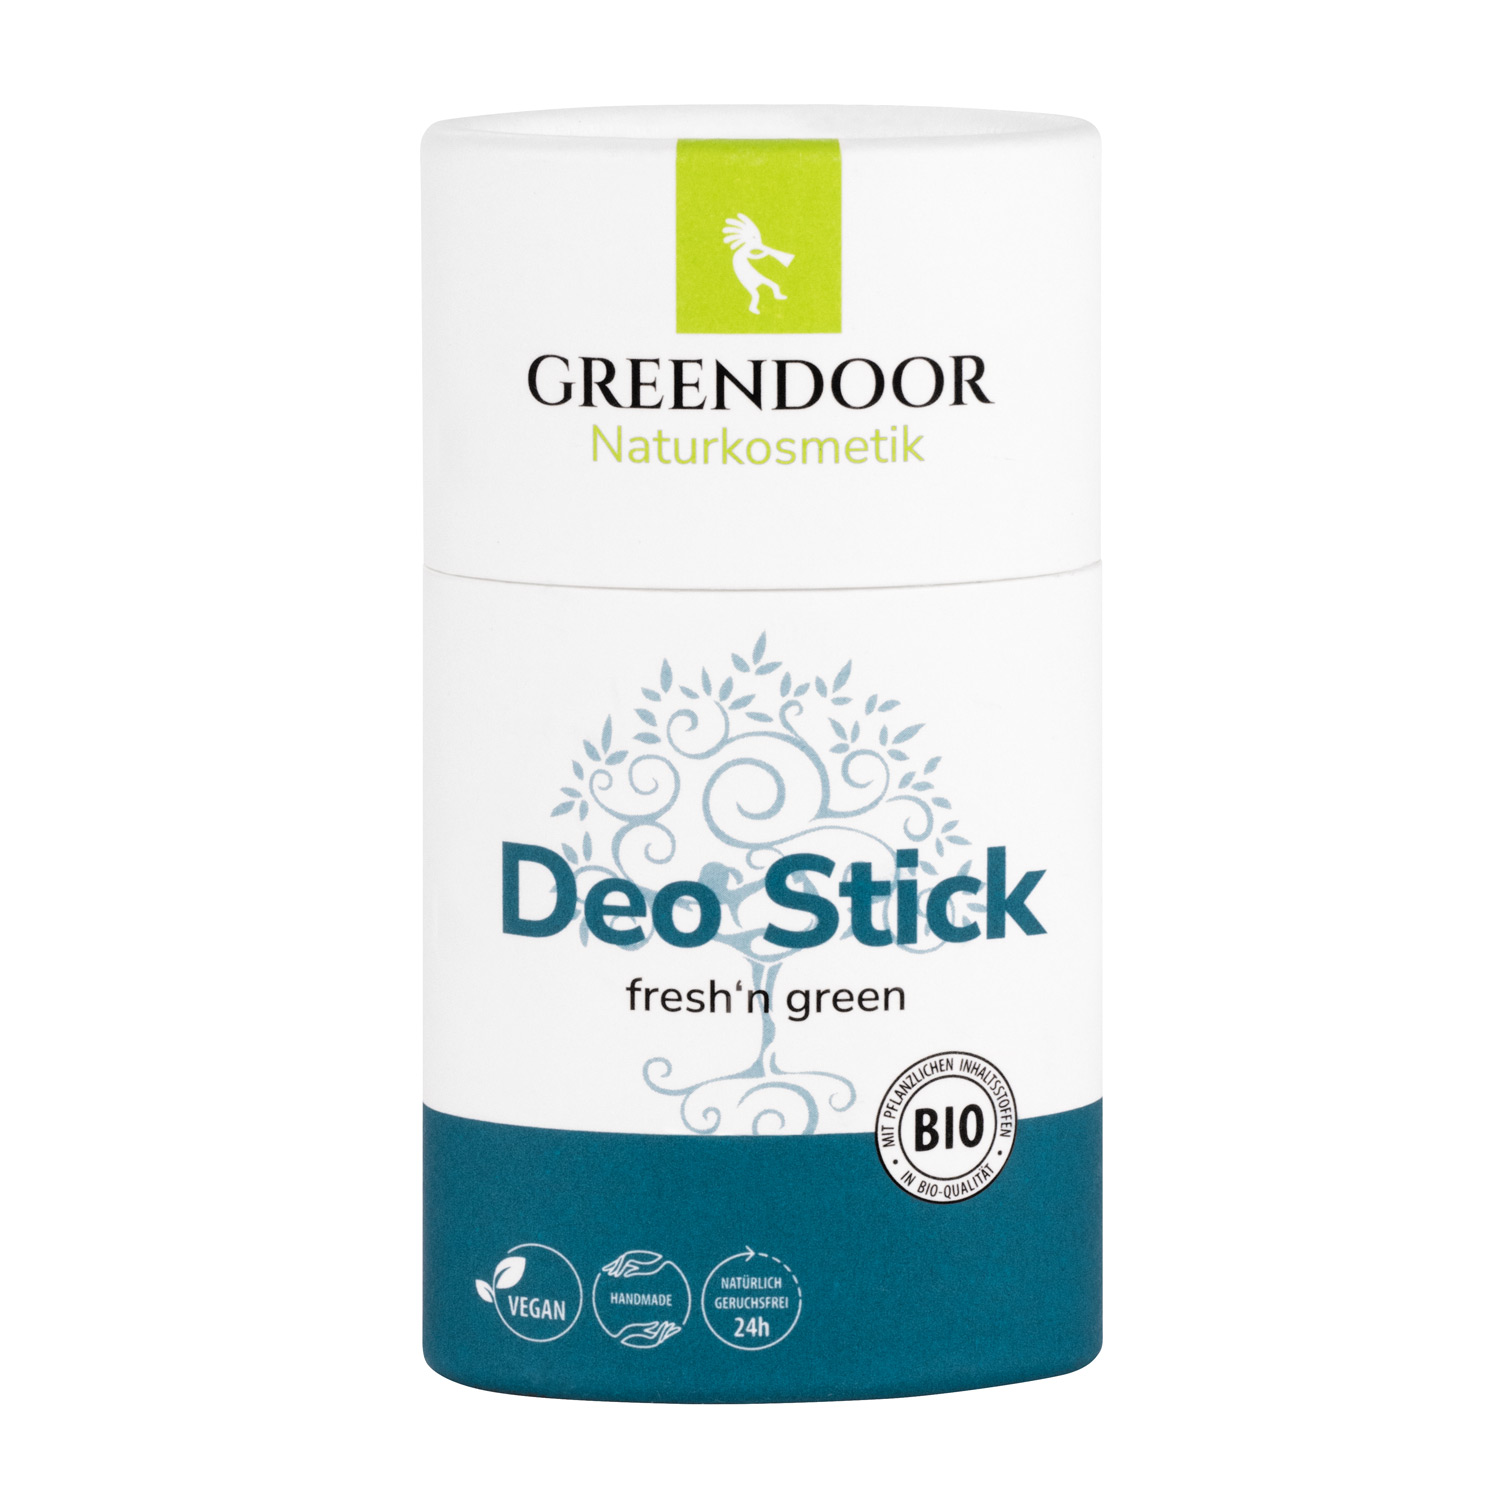 Zweite Wahl: Deo Stick fresh'n green, Push up Stick aus 100% Pappe, vegan